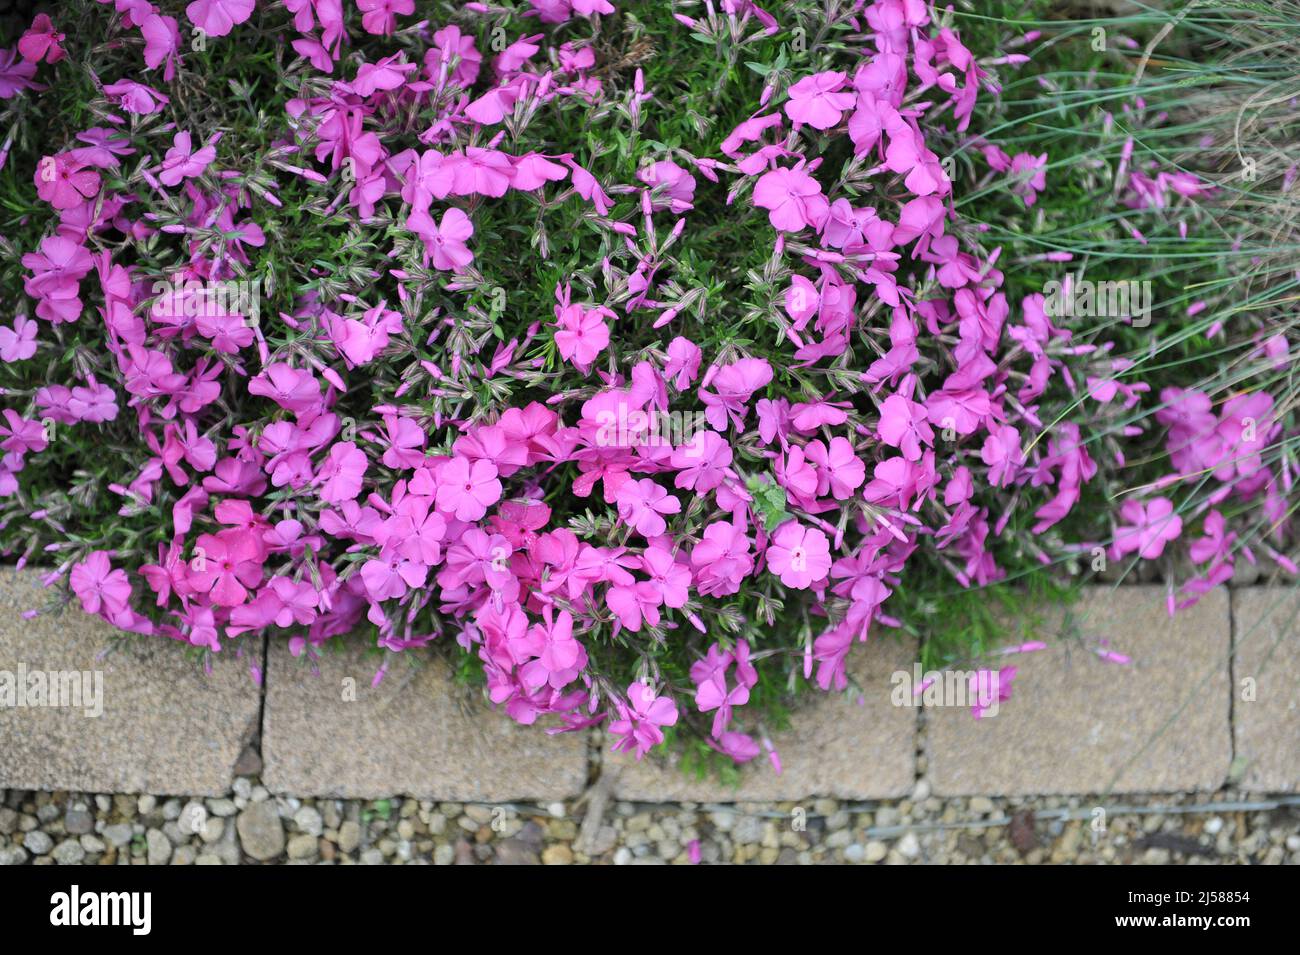 Phlox de mousse rose (Phlox subulata) le coussin de McDaniel fleurit dans un jardin en mai Banque D'Images